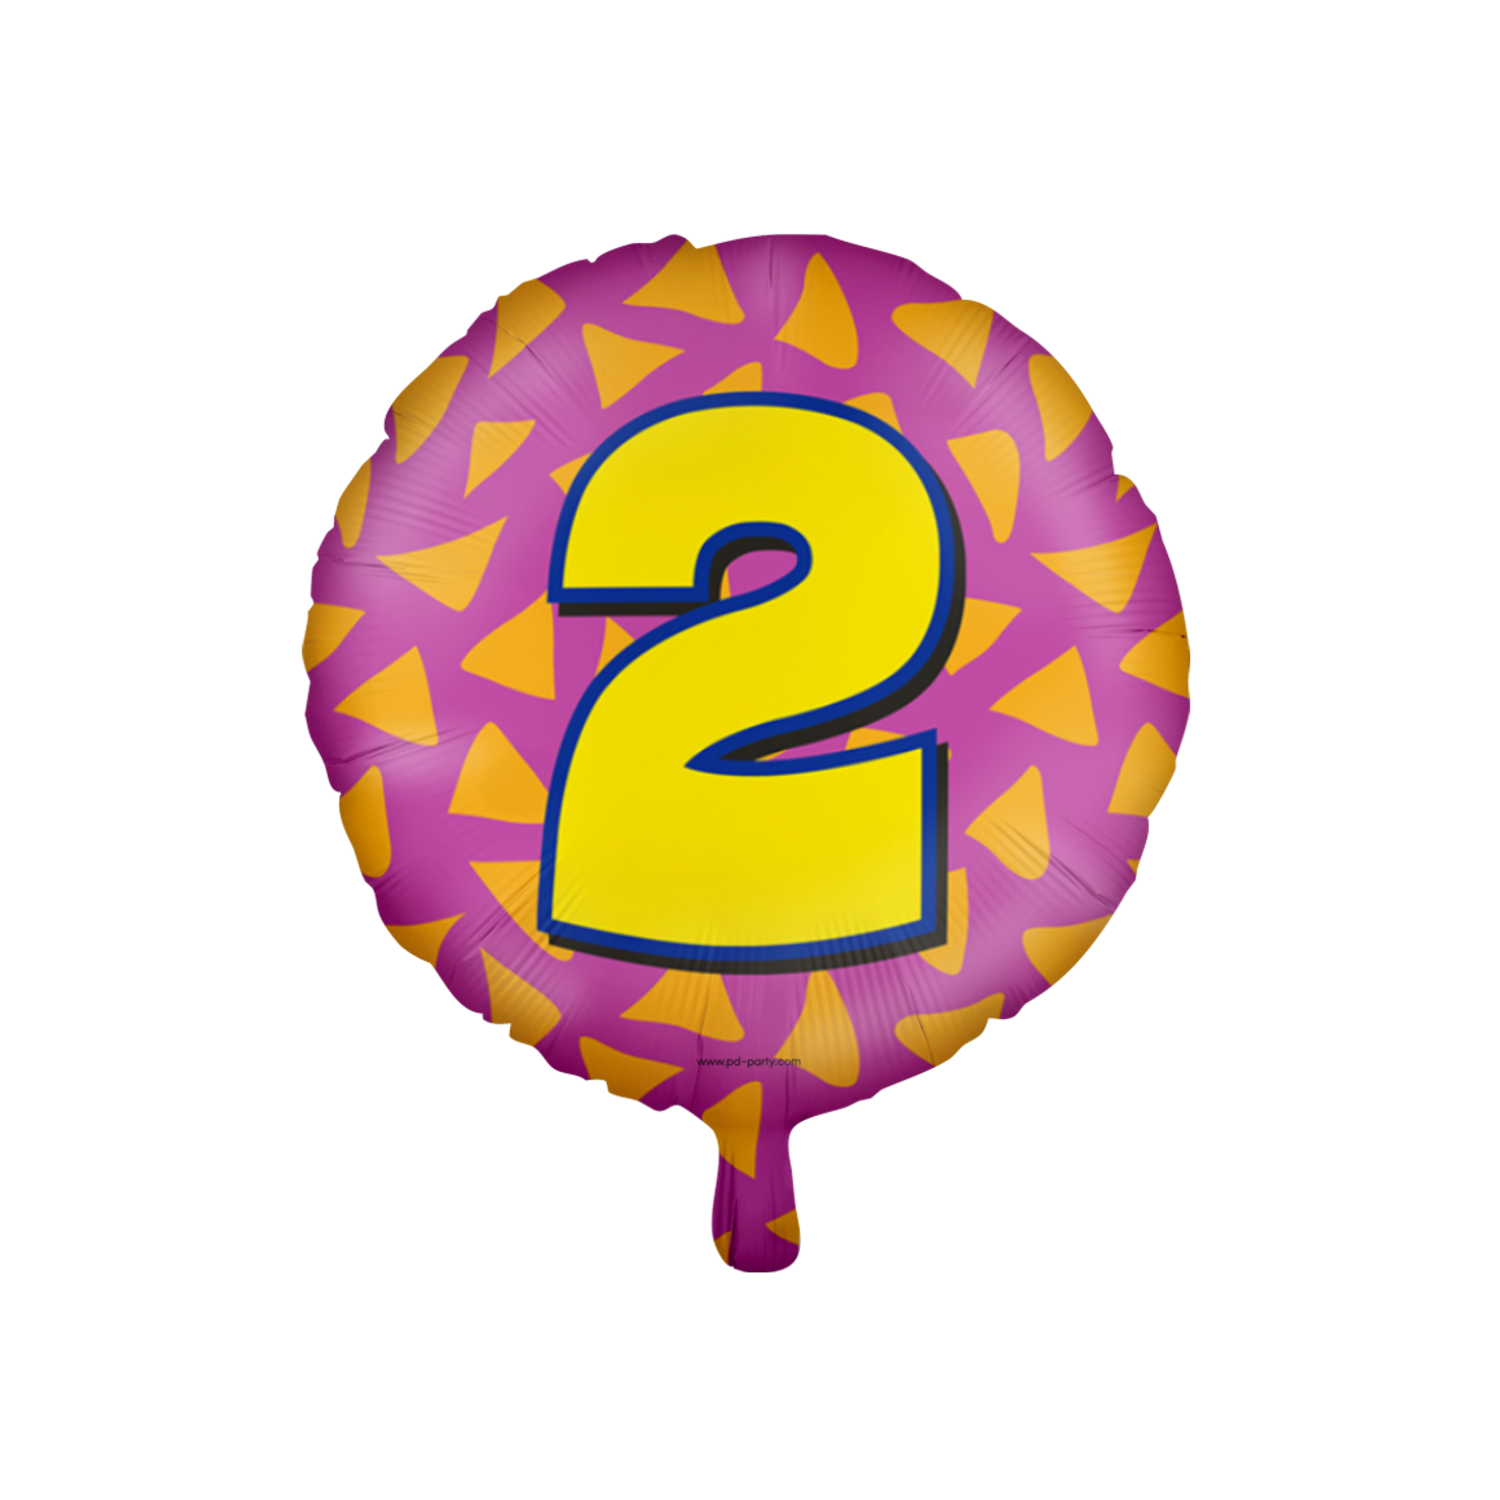 Palloncino ad elio 2 anni colorato vuoto 46 cm - Partywinkel